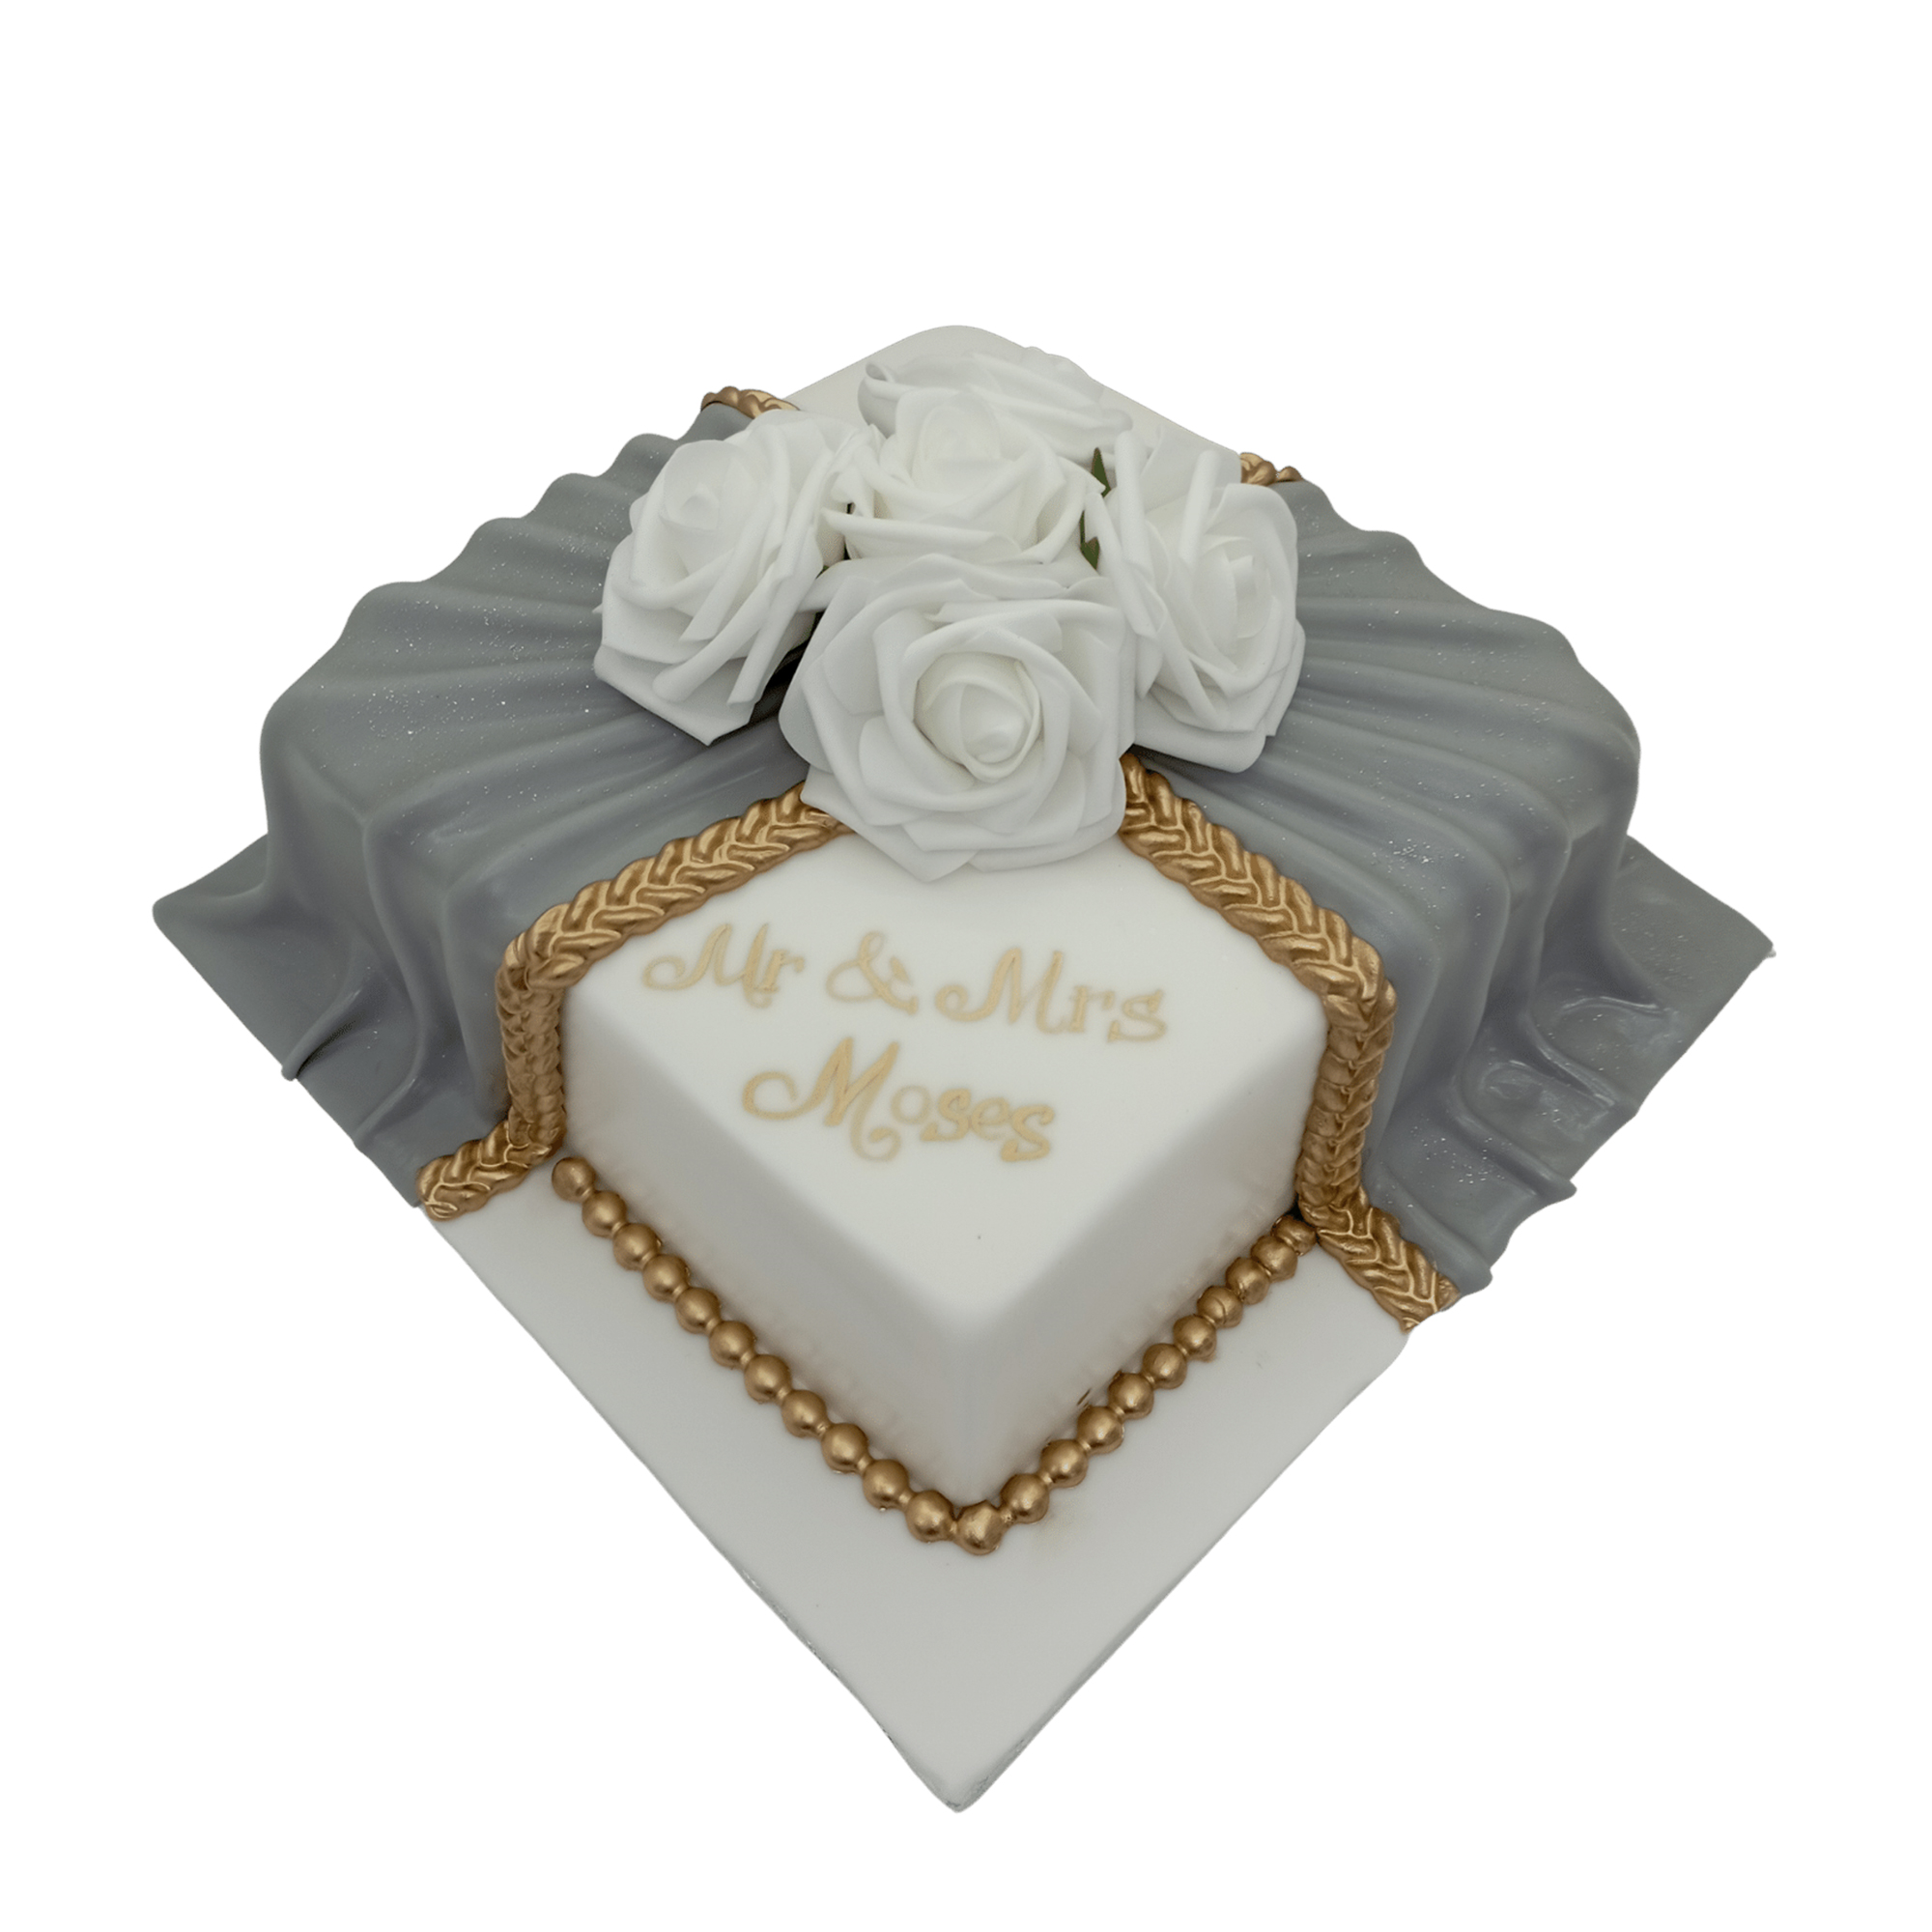 Square Shaped Wedding Cake 